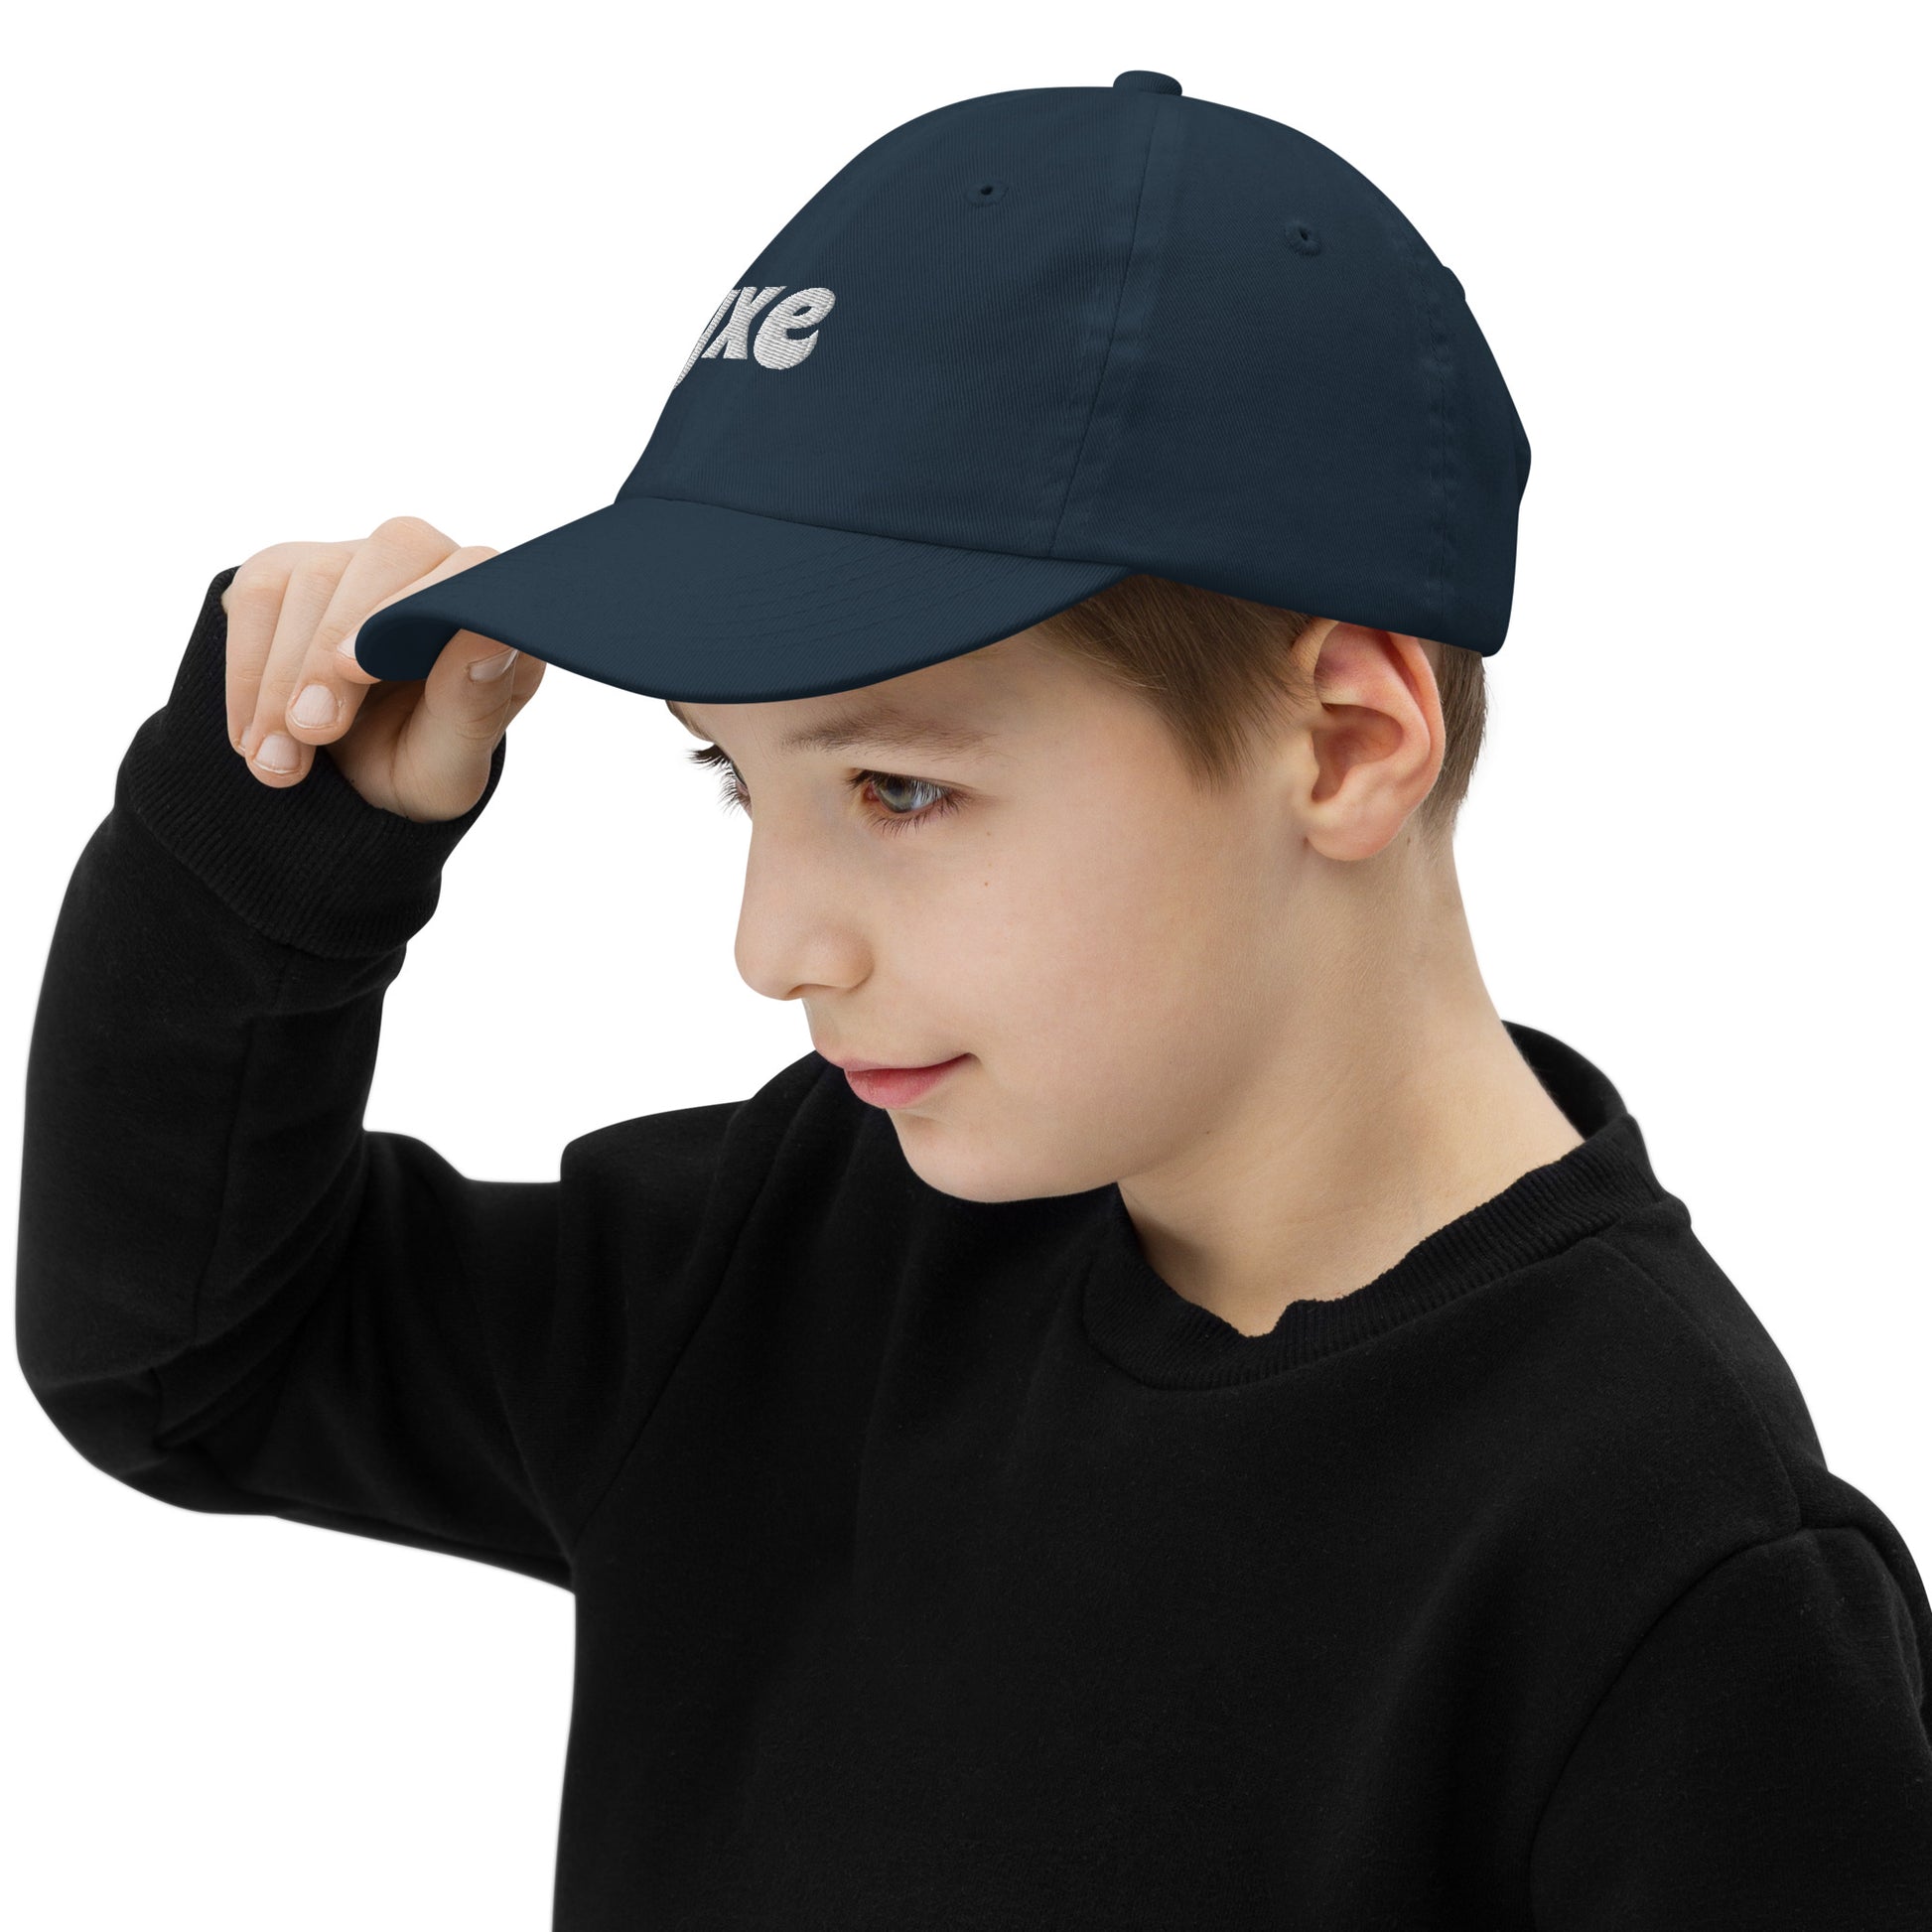 Groovy Kid's Baseball Cap - White • YXE Saskatoon • YHM Designs - Image 05